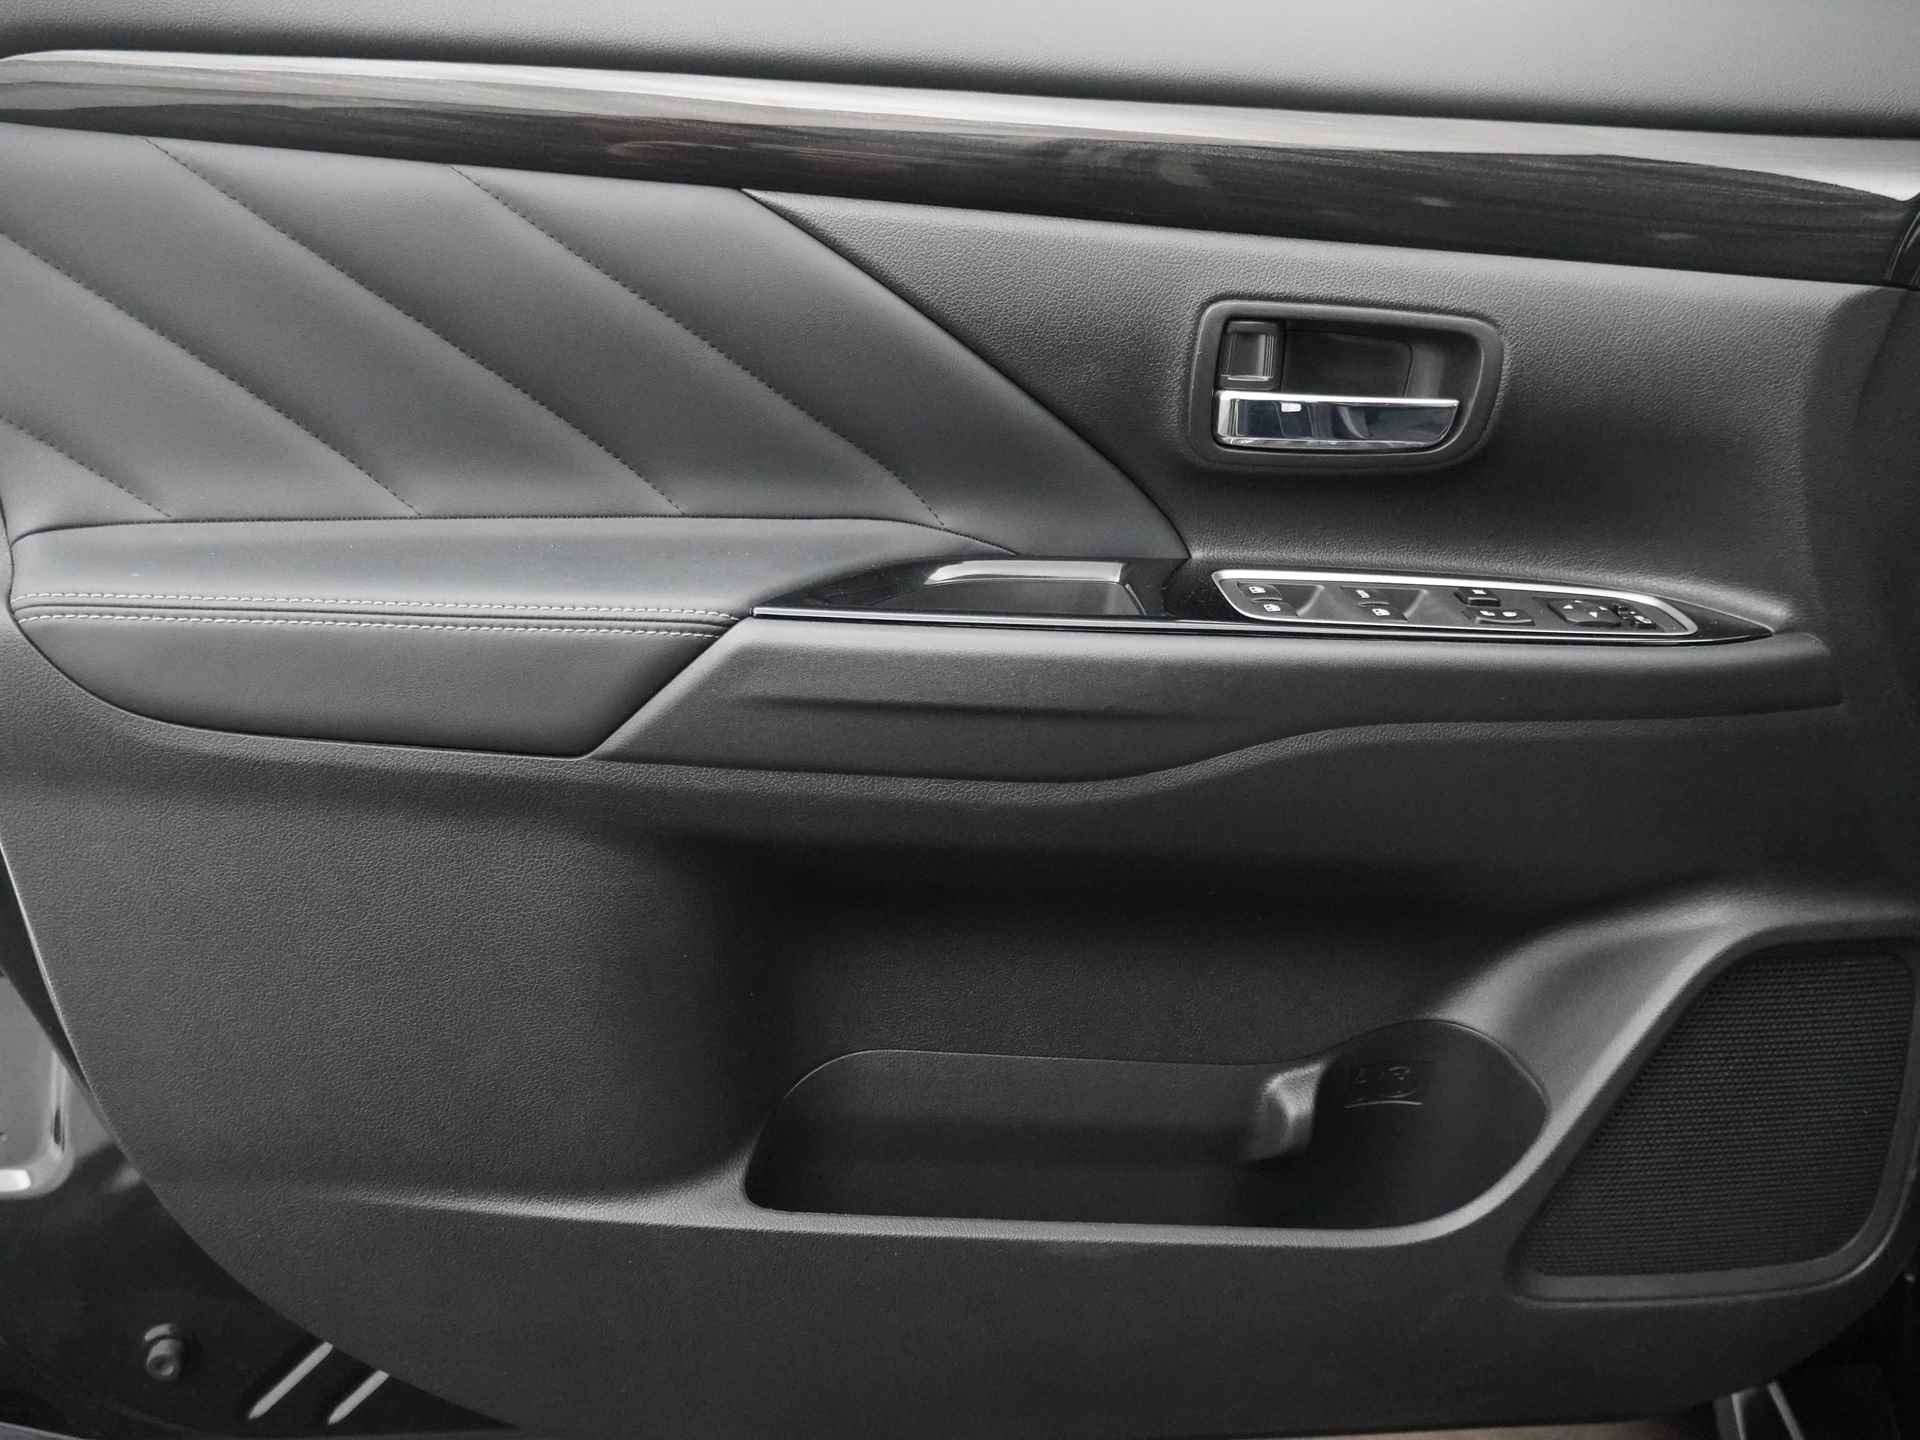 Mitsubishi Outlander 2.0 Instyle+ 4WD - Schuifkanteldak - Lederen bekleding - Voorraam verwarming - Apple CarPlay / Android Auto - Elektrische achterklep - 12 Maanden bovag garantie - 23/48